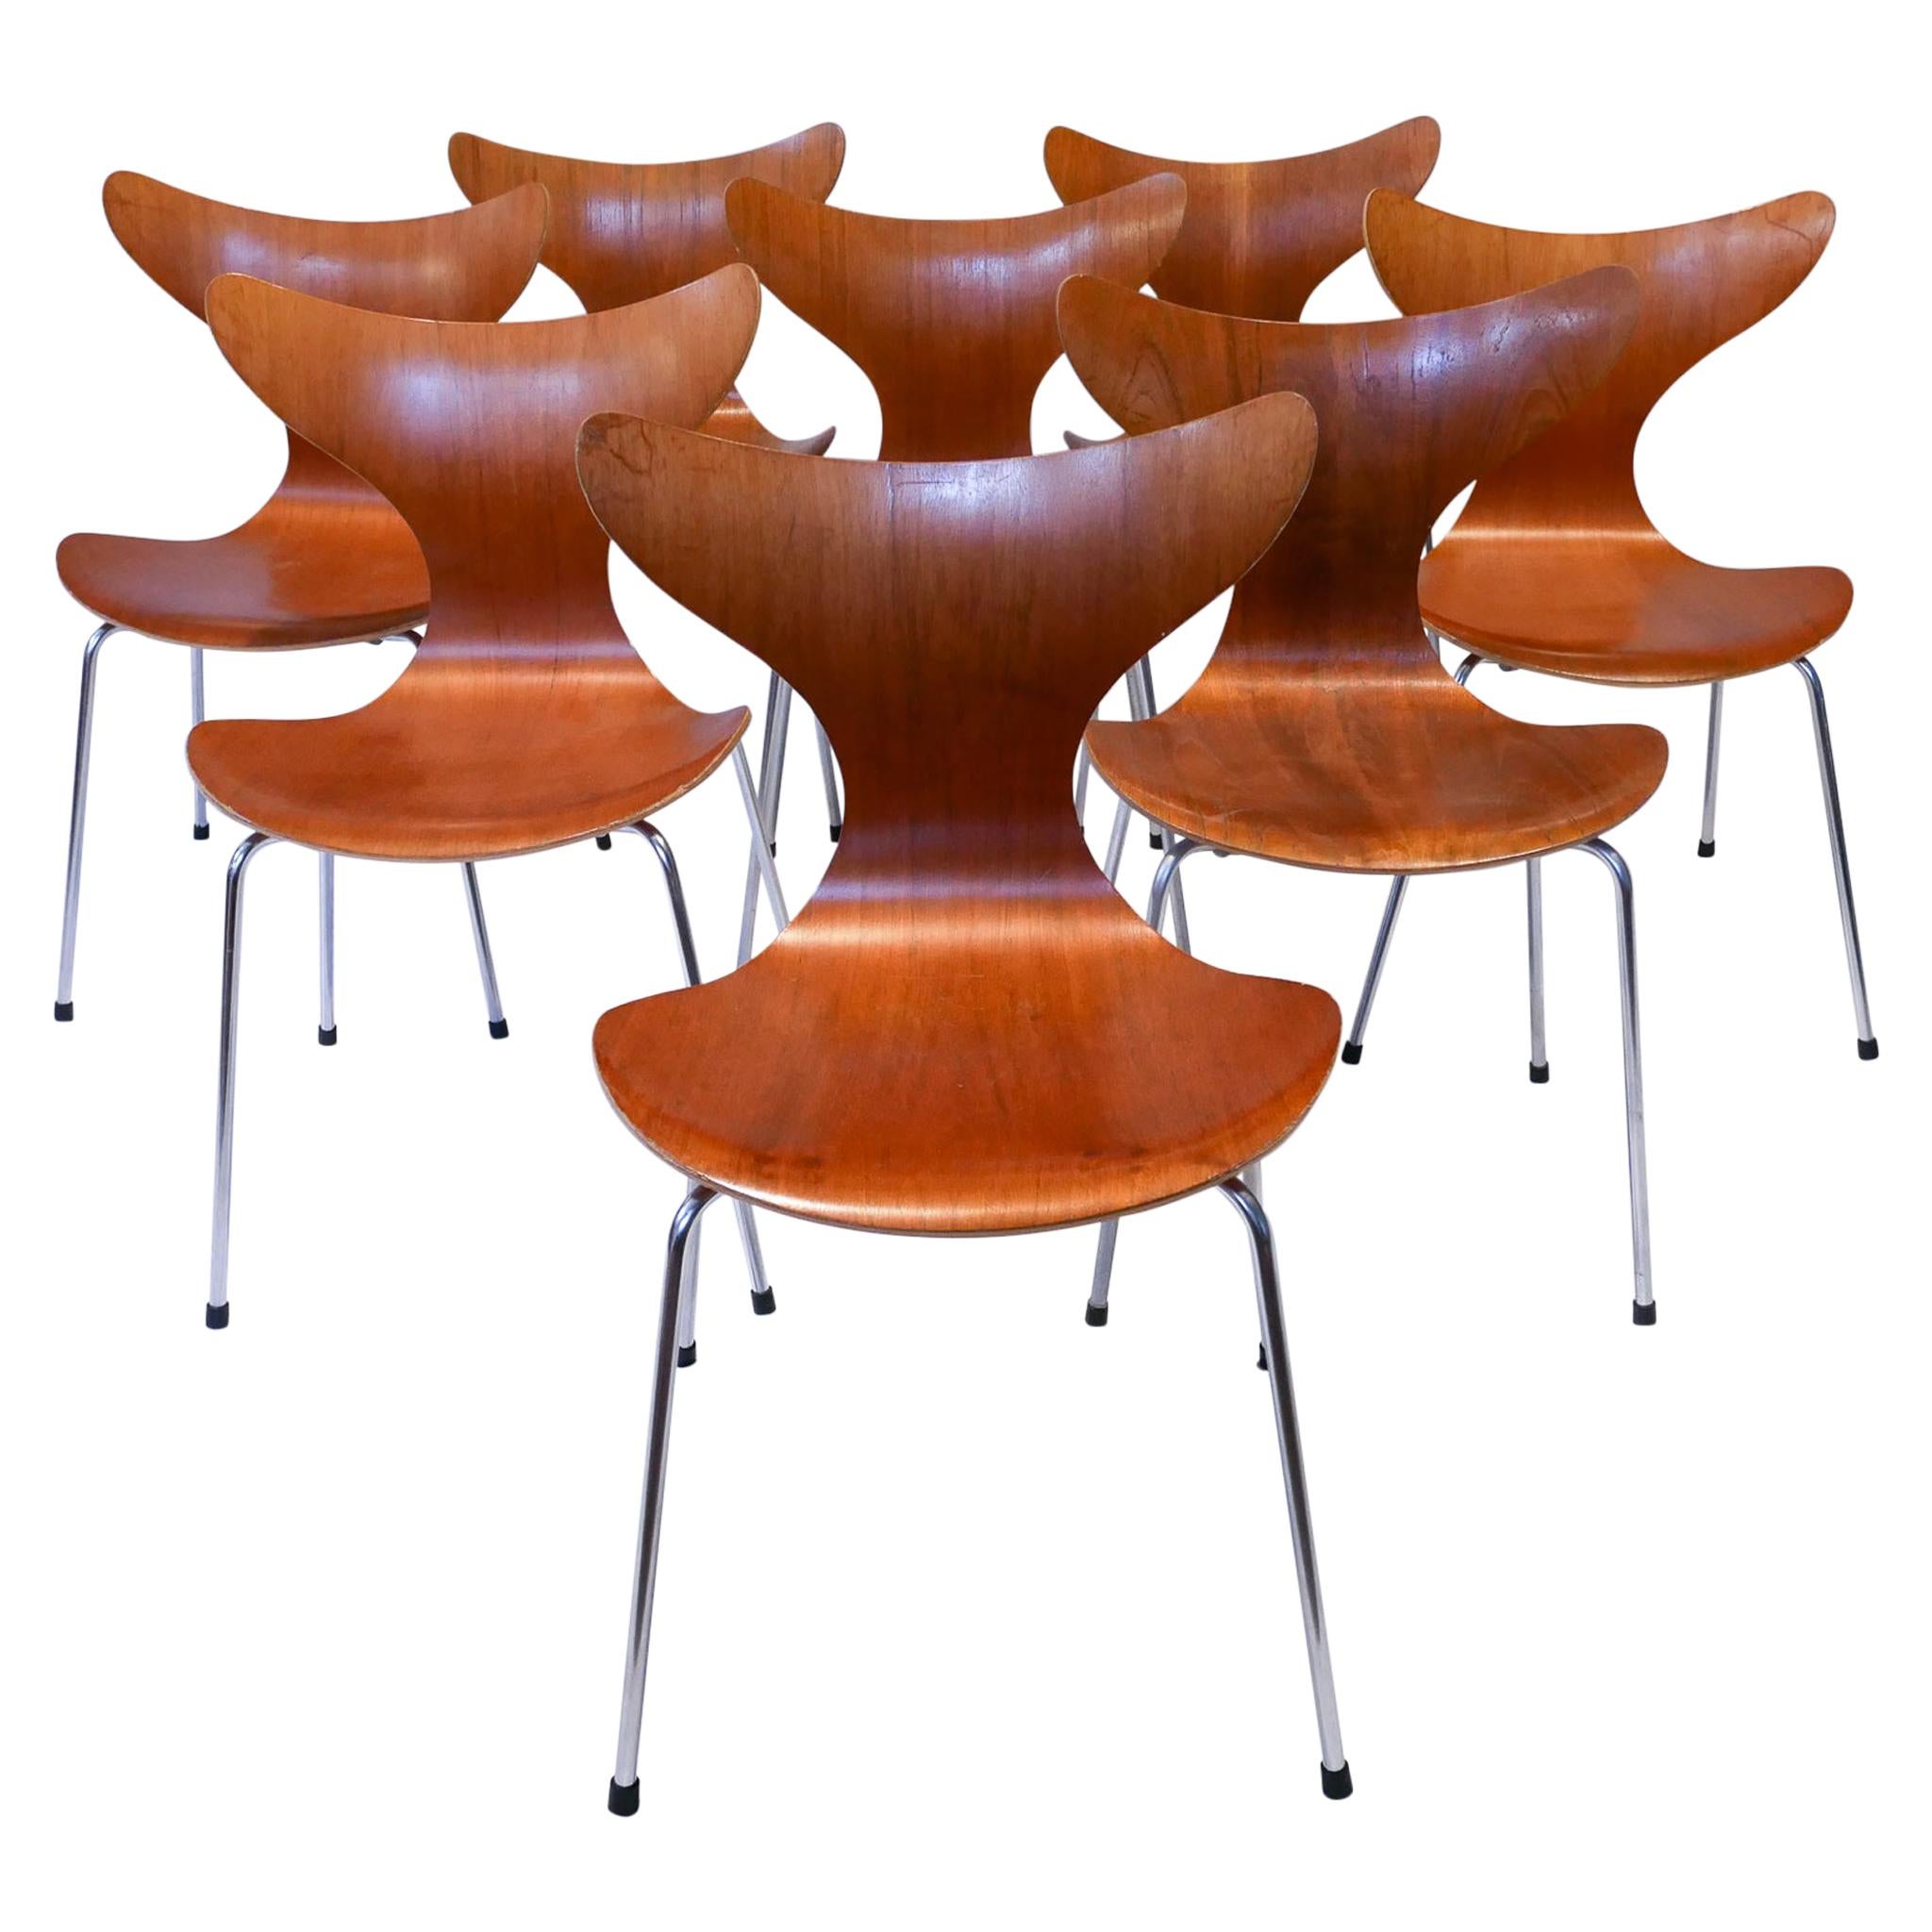 Arne Jacobsen 3208 "Seagull" Dining Chairs in Teak, 1970s Fritz Hansen Denmark For Sale